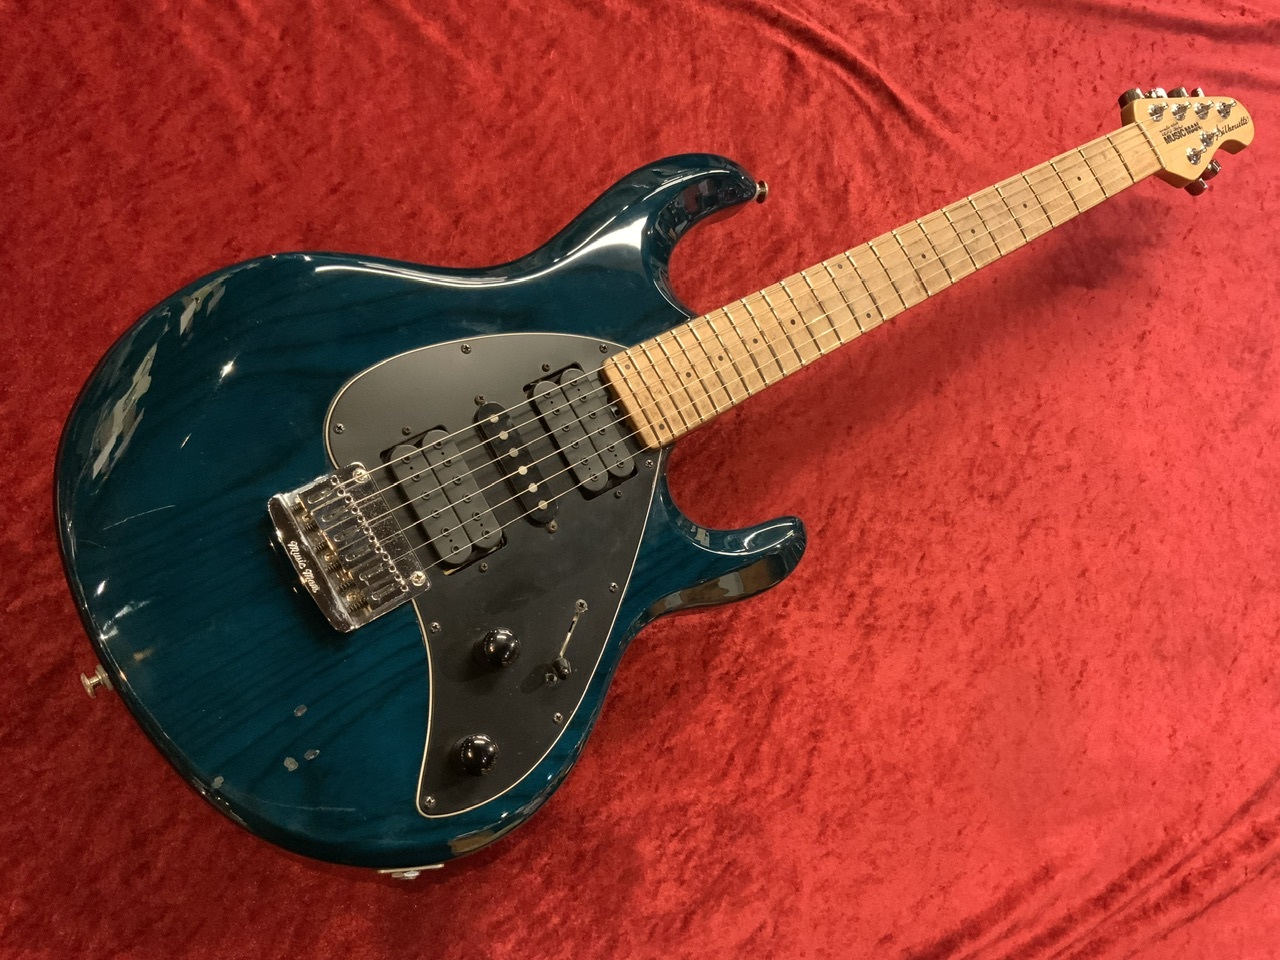 メーカー不明のMusicman Silhoette HSHタイプのモデルギター